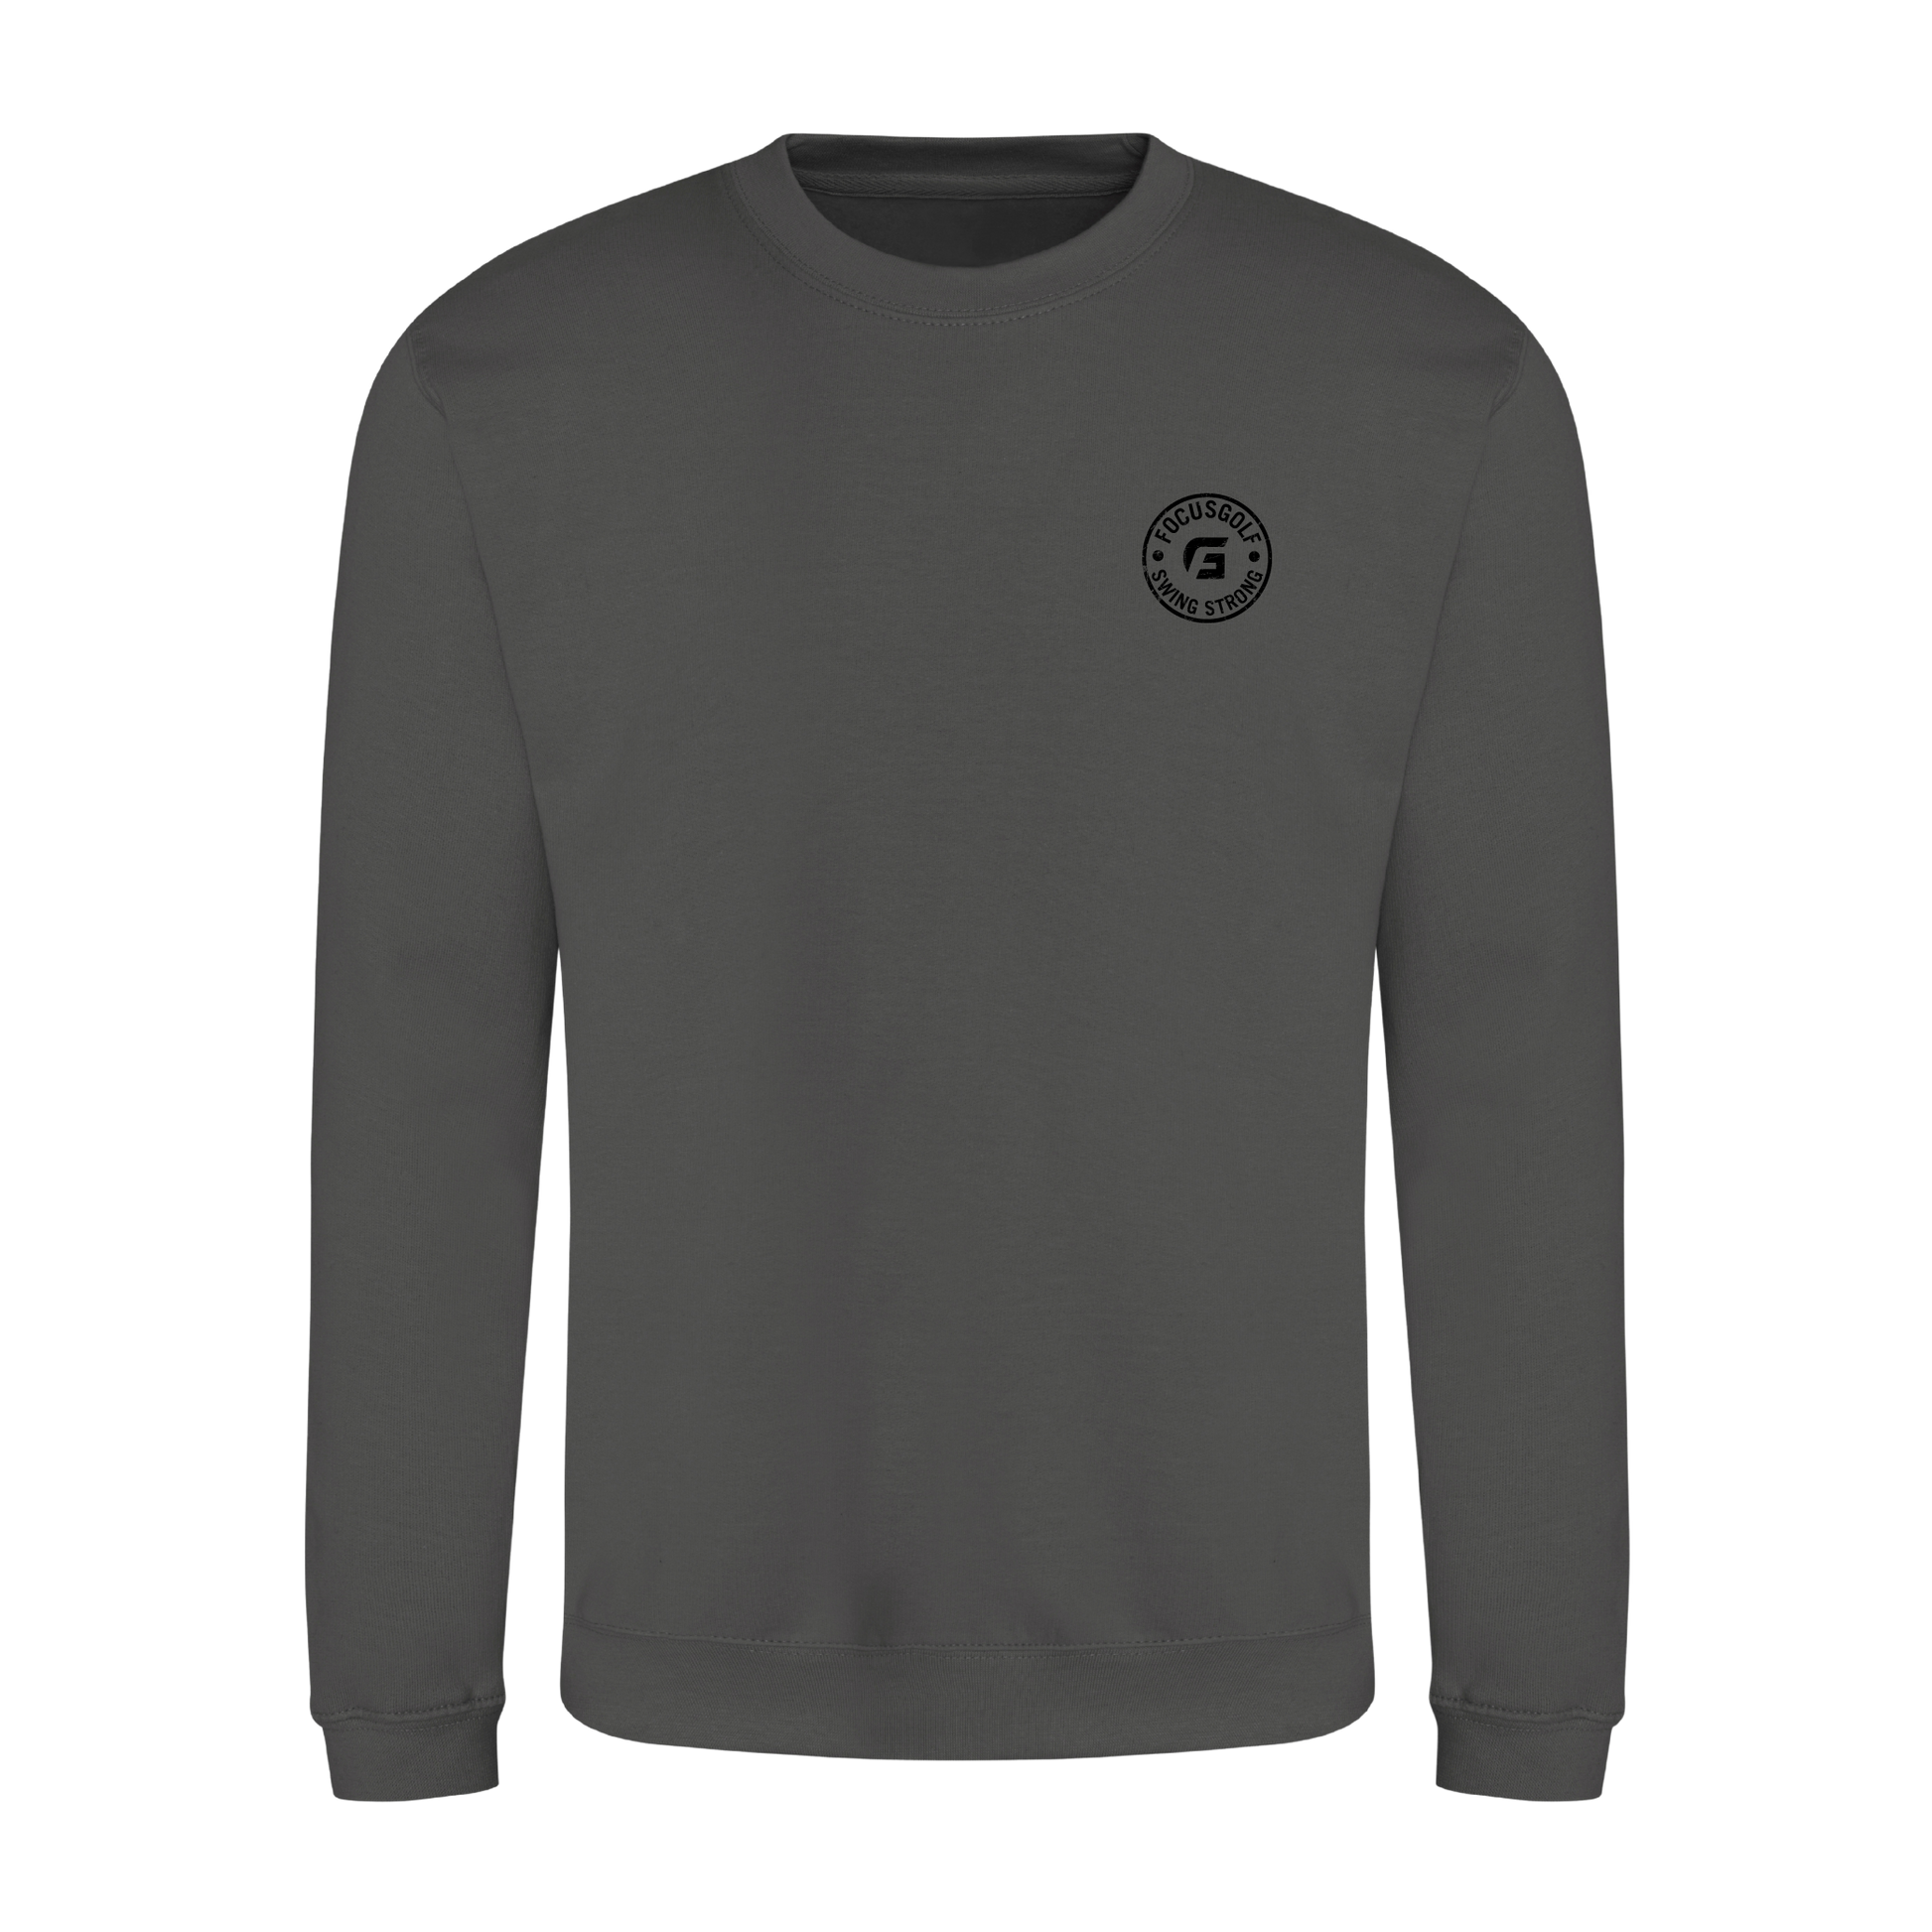 Focusgolf Honor Men's Graphite Grey Sweatshirt